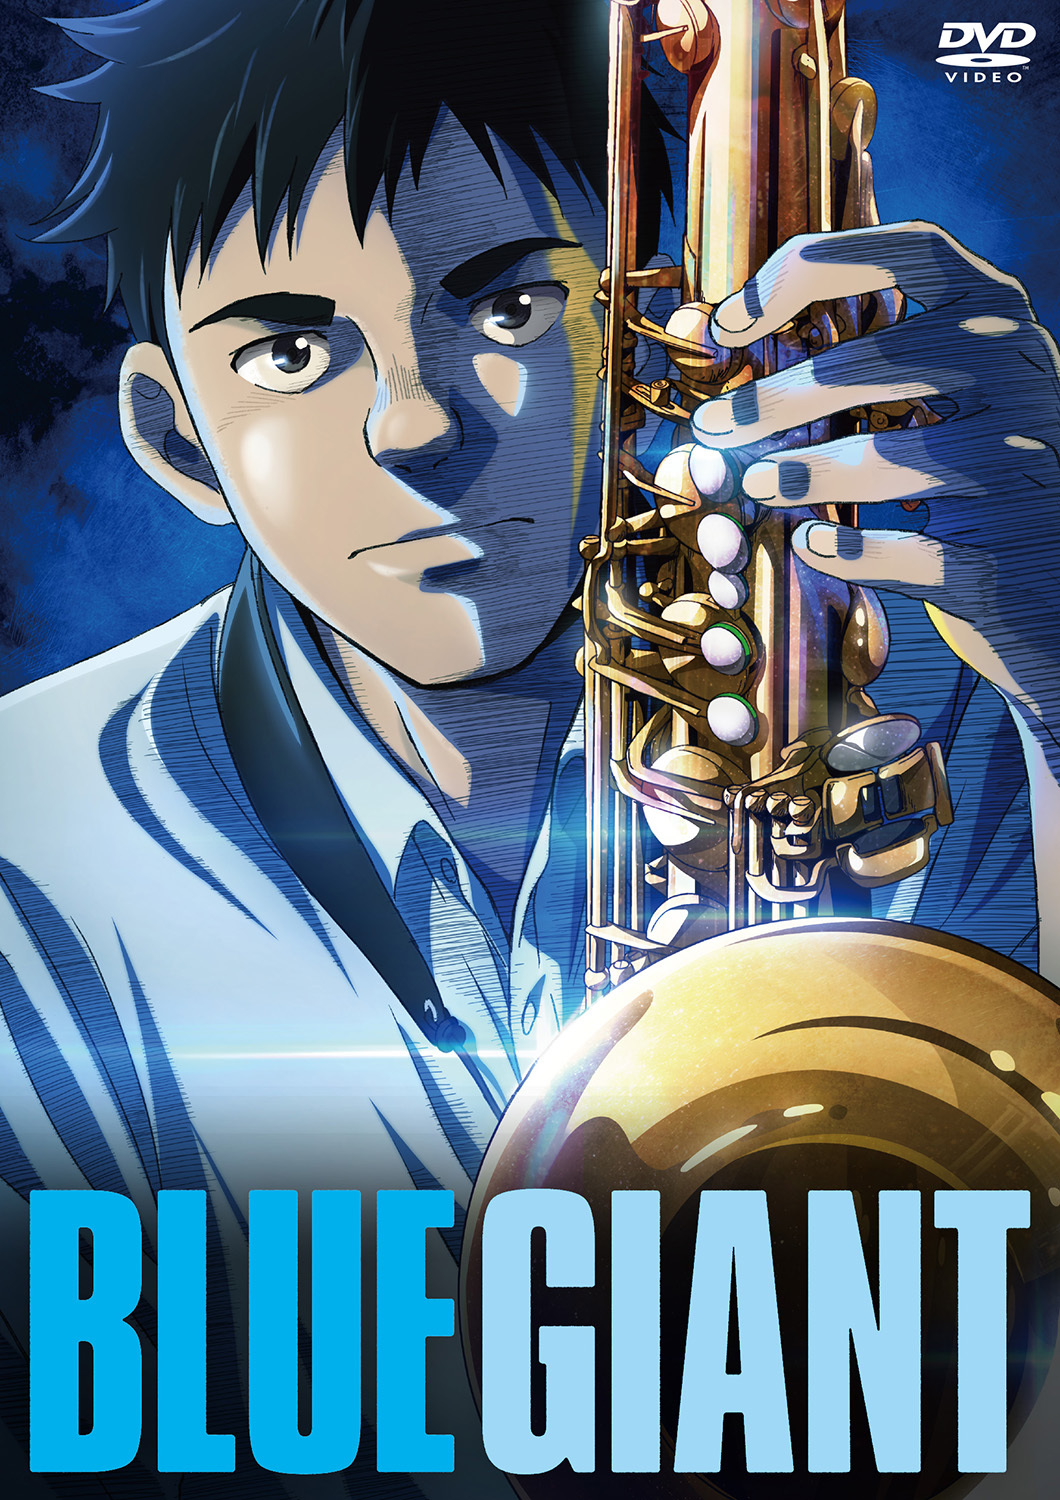 アニメーション映画『BLUE GIANT』Blu-ray&DVD発売決定 初回生産限定版には、スペシャルCDやスペシャルブックレットなど特典 ...